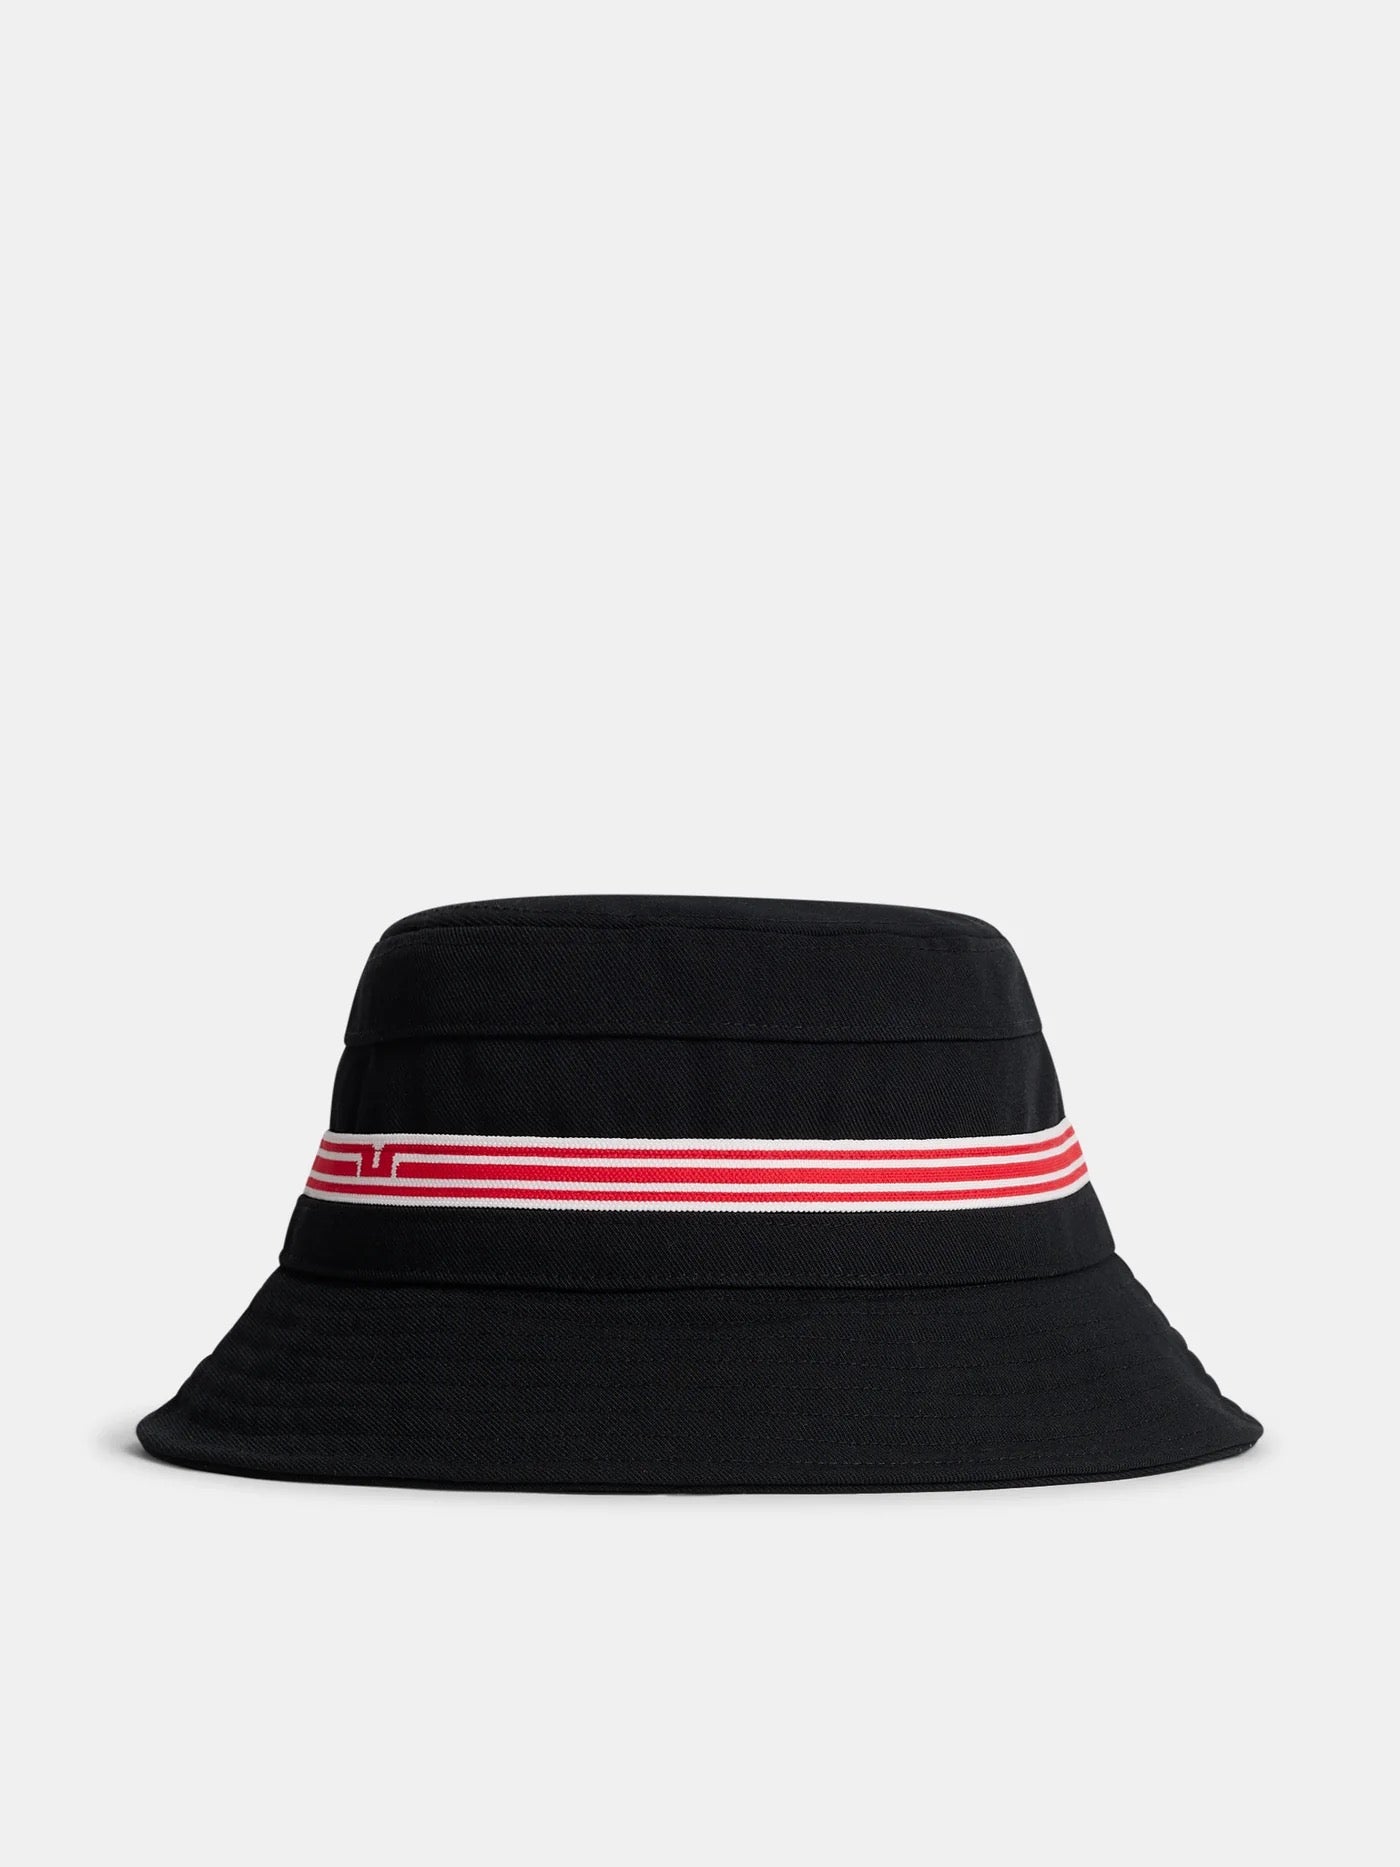 JDEFEG Hats for Men Women Bell Crusher Cap Golf Hats Sun Cap Utdoor for Men  Fashion Baseball for Choice Hat Baseball Caps Frame Hat Bucket Hat Black 